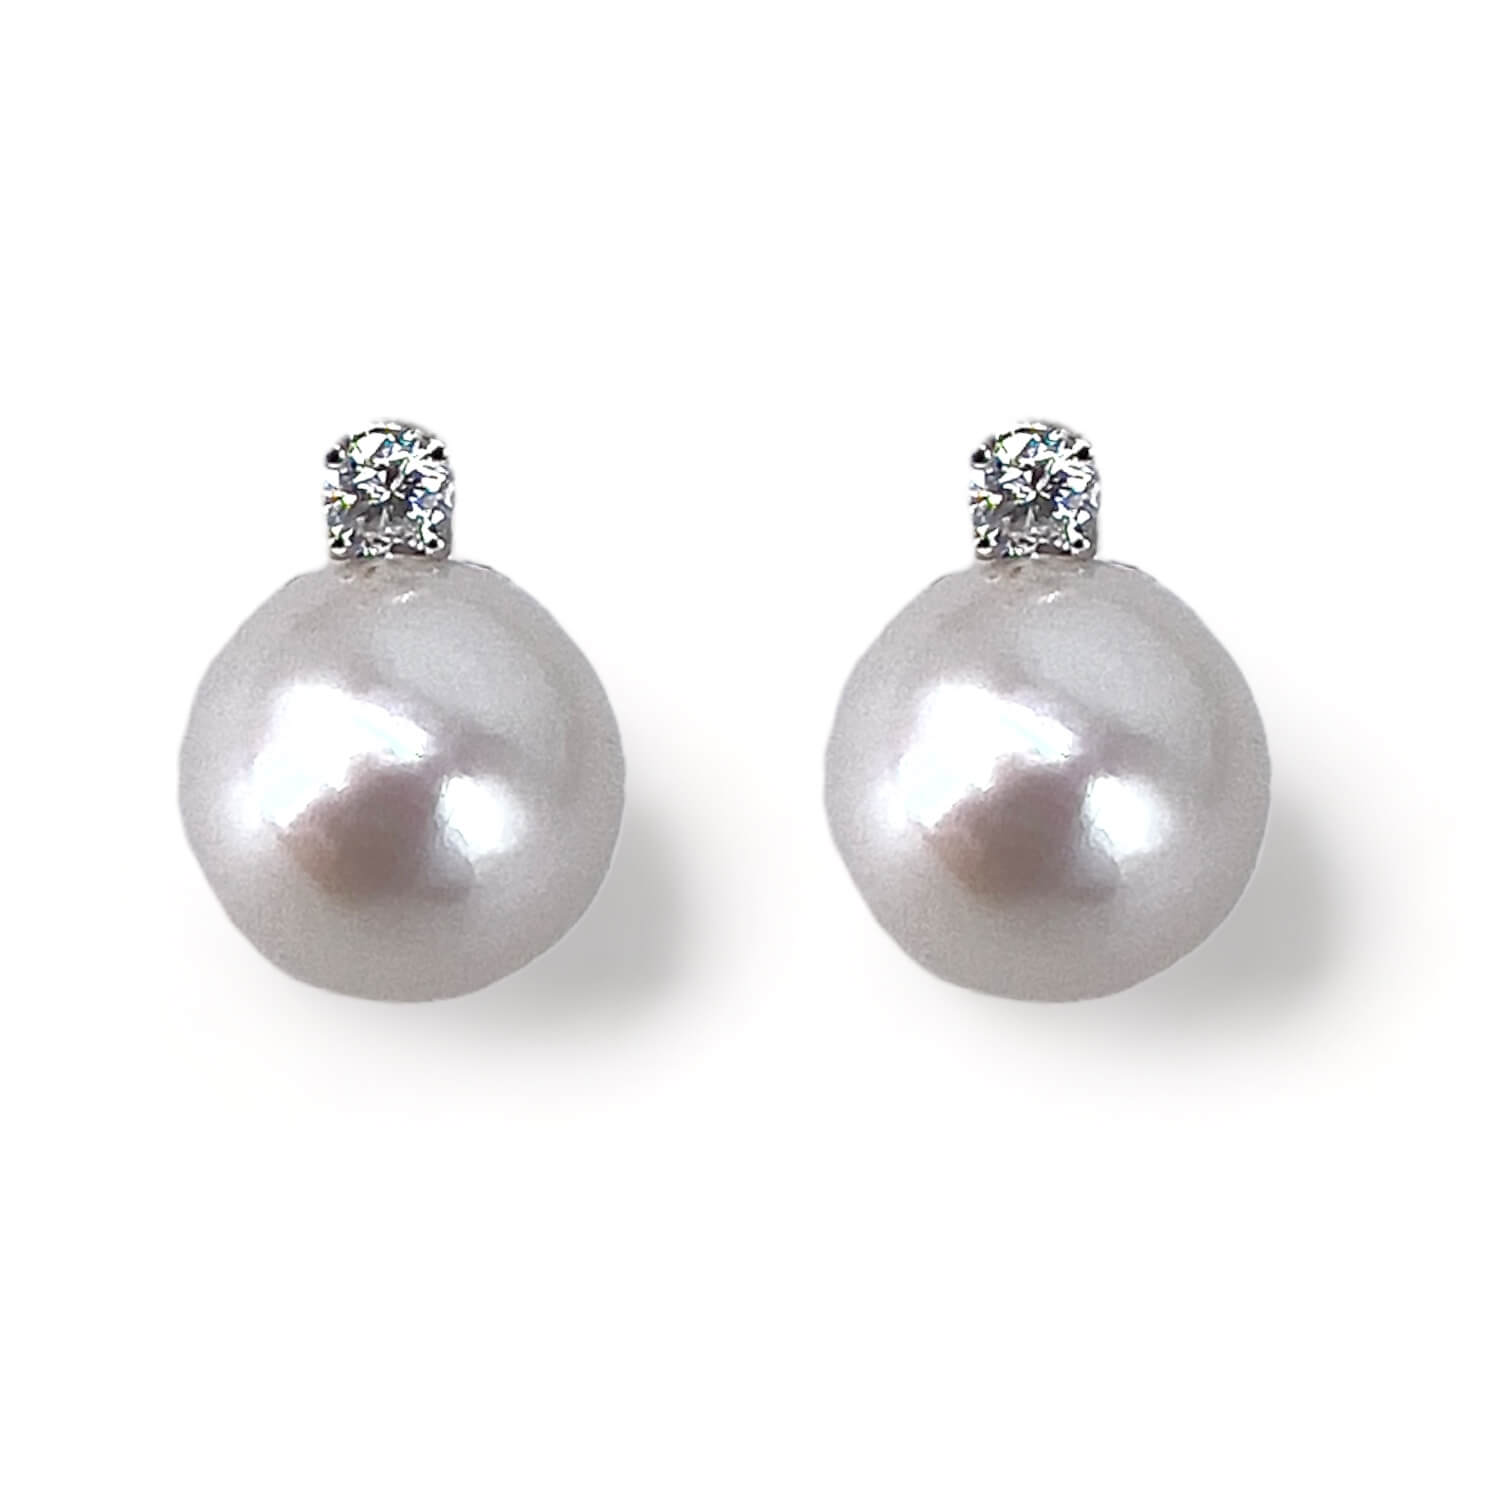 White gold Japanese pearl earrings Art.ORP279-4